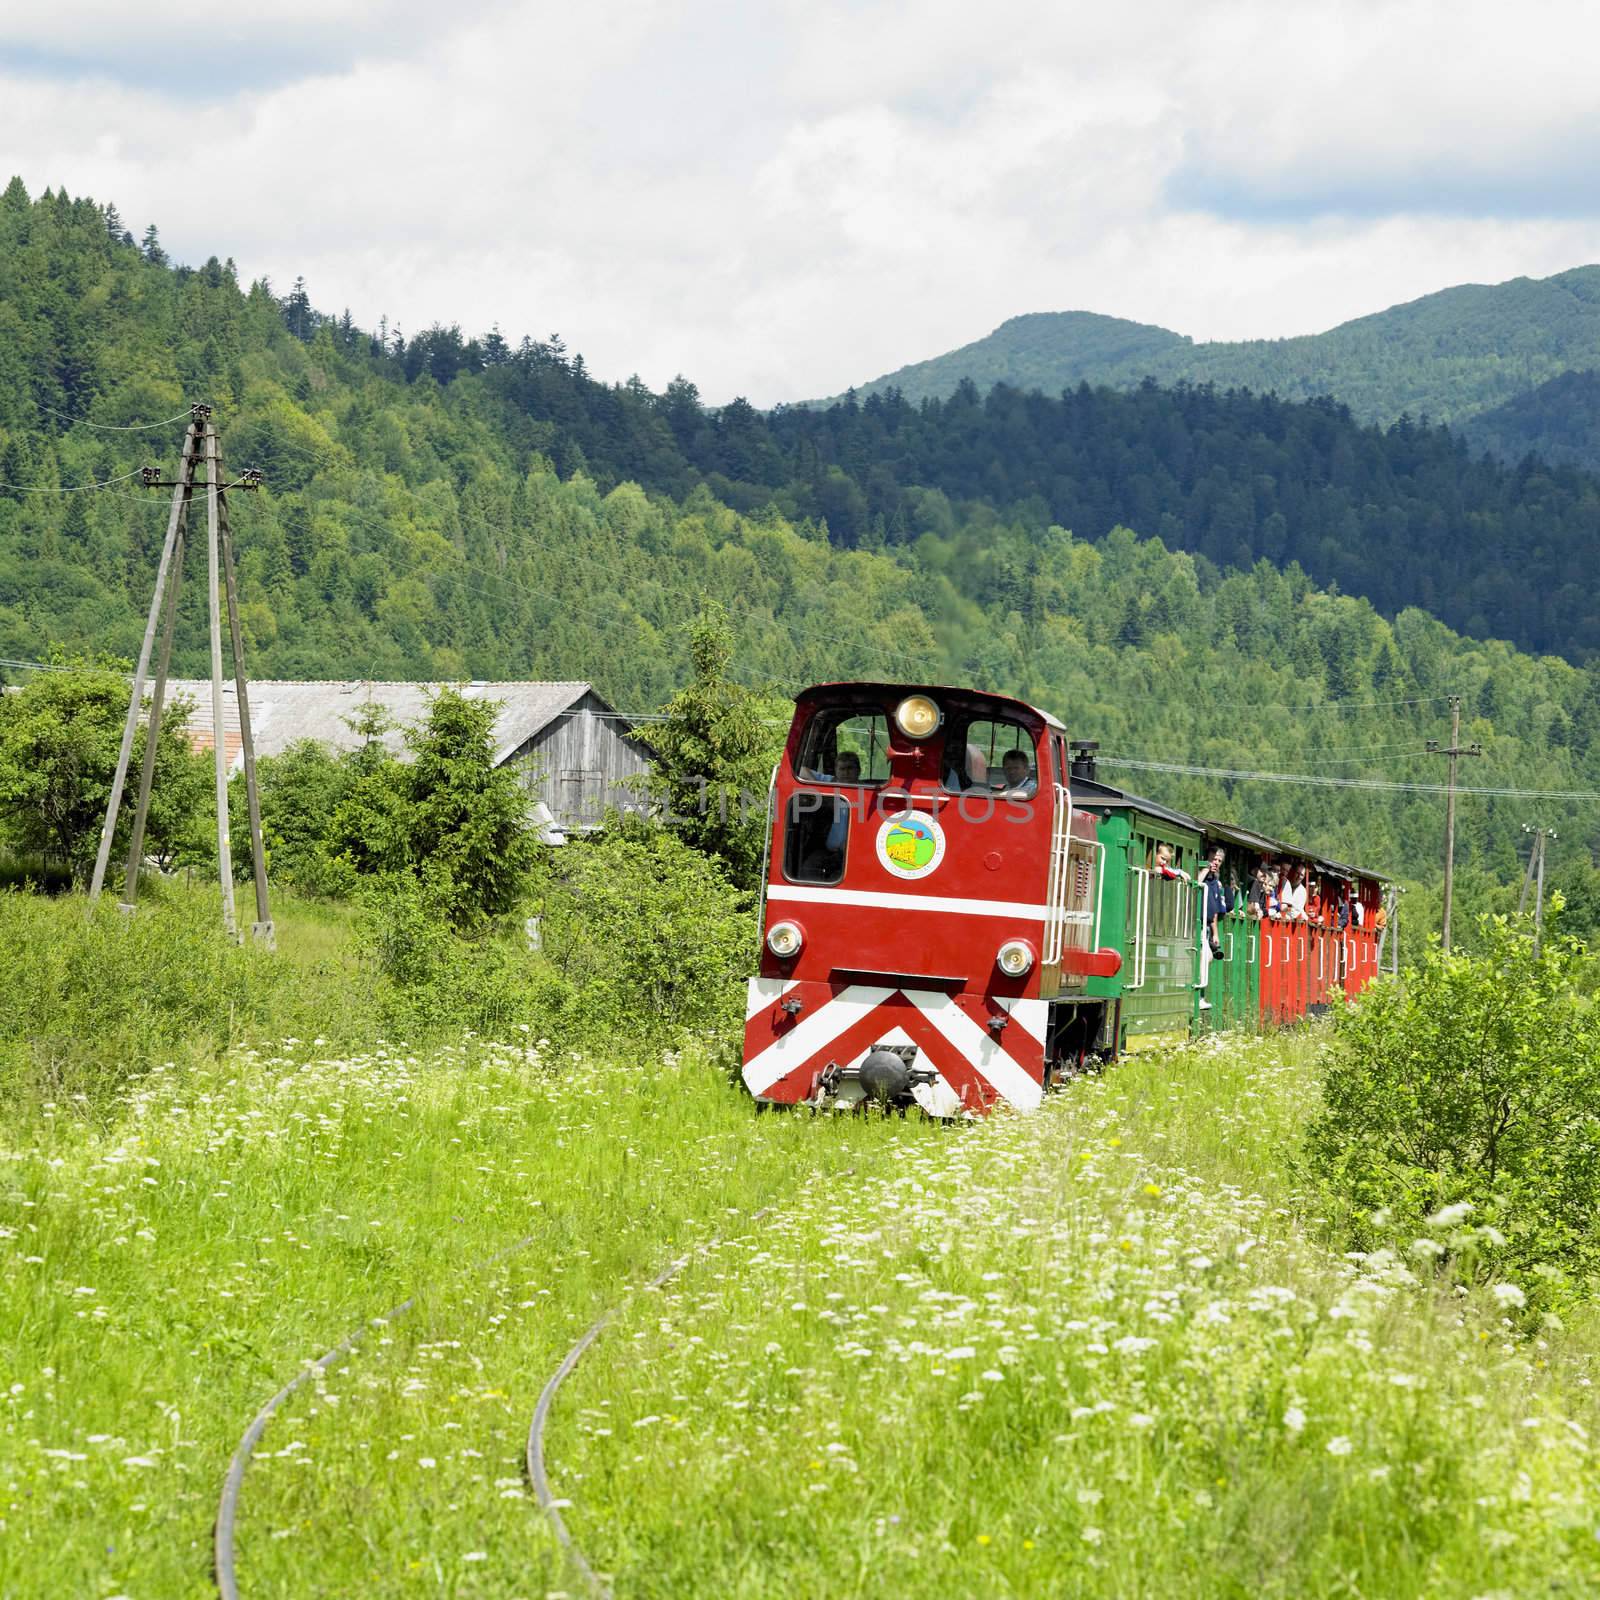 Bieszczadska wood railway, Dolzyca - Przyslup, Poland by phbcz